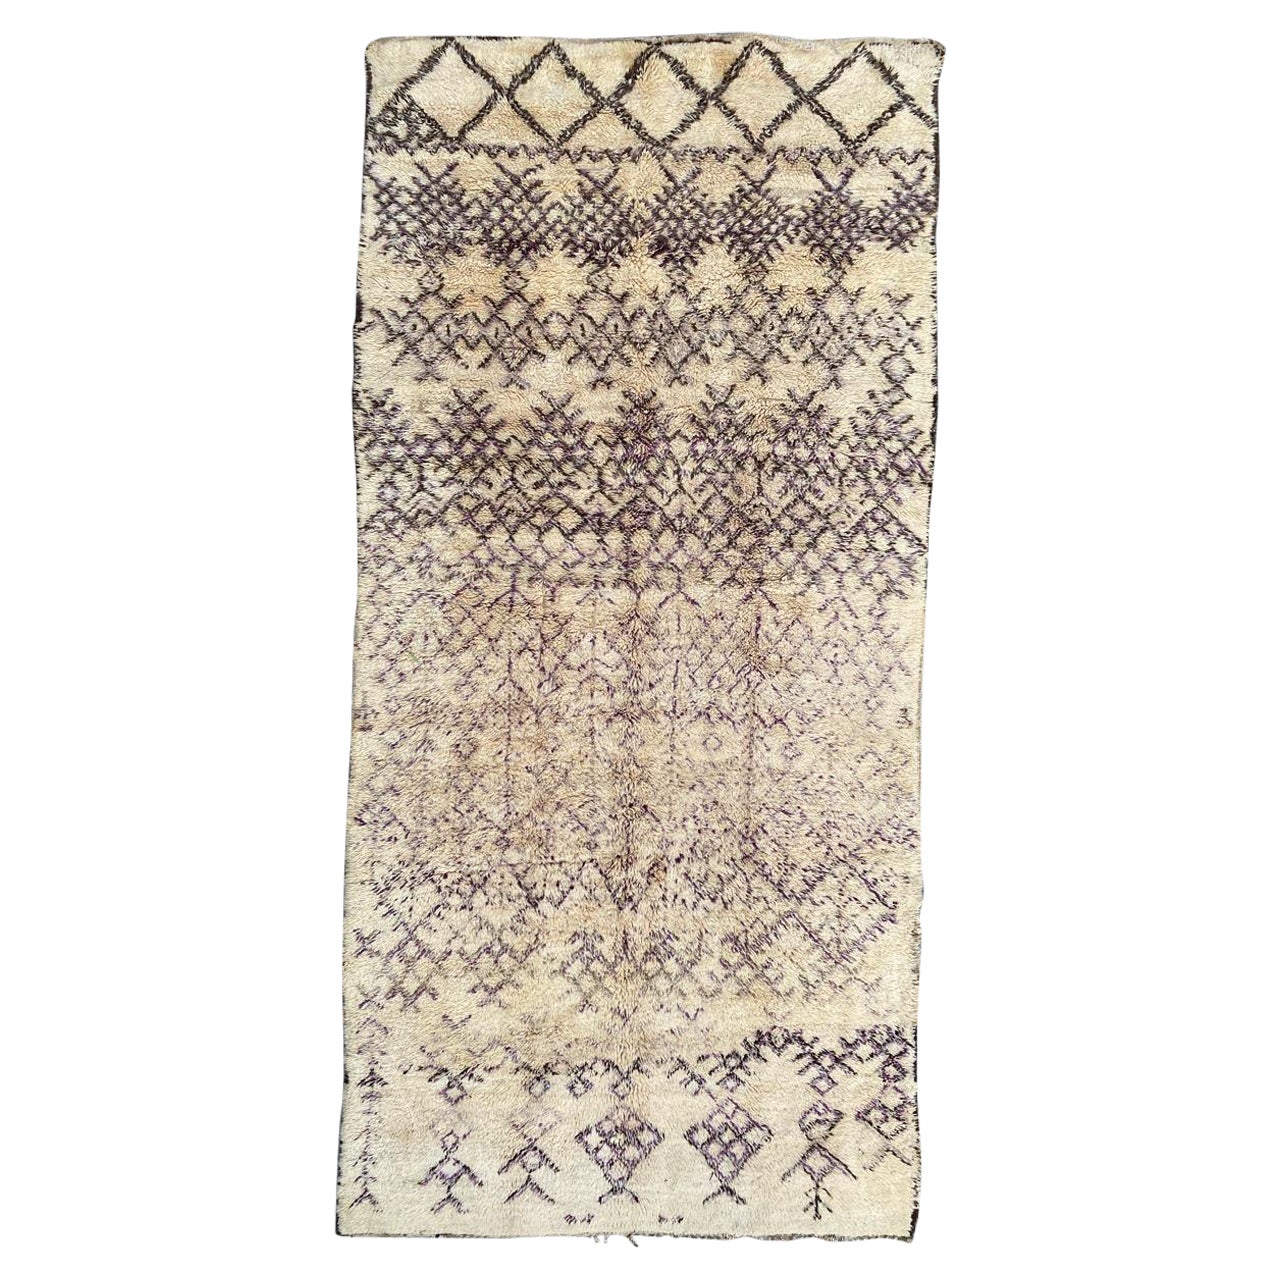 Bobyrug's Very Pretty Vers Vintage Tribal Berbere Moroccan Rug (tapis marocain tribal Vers Vintage)